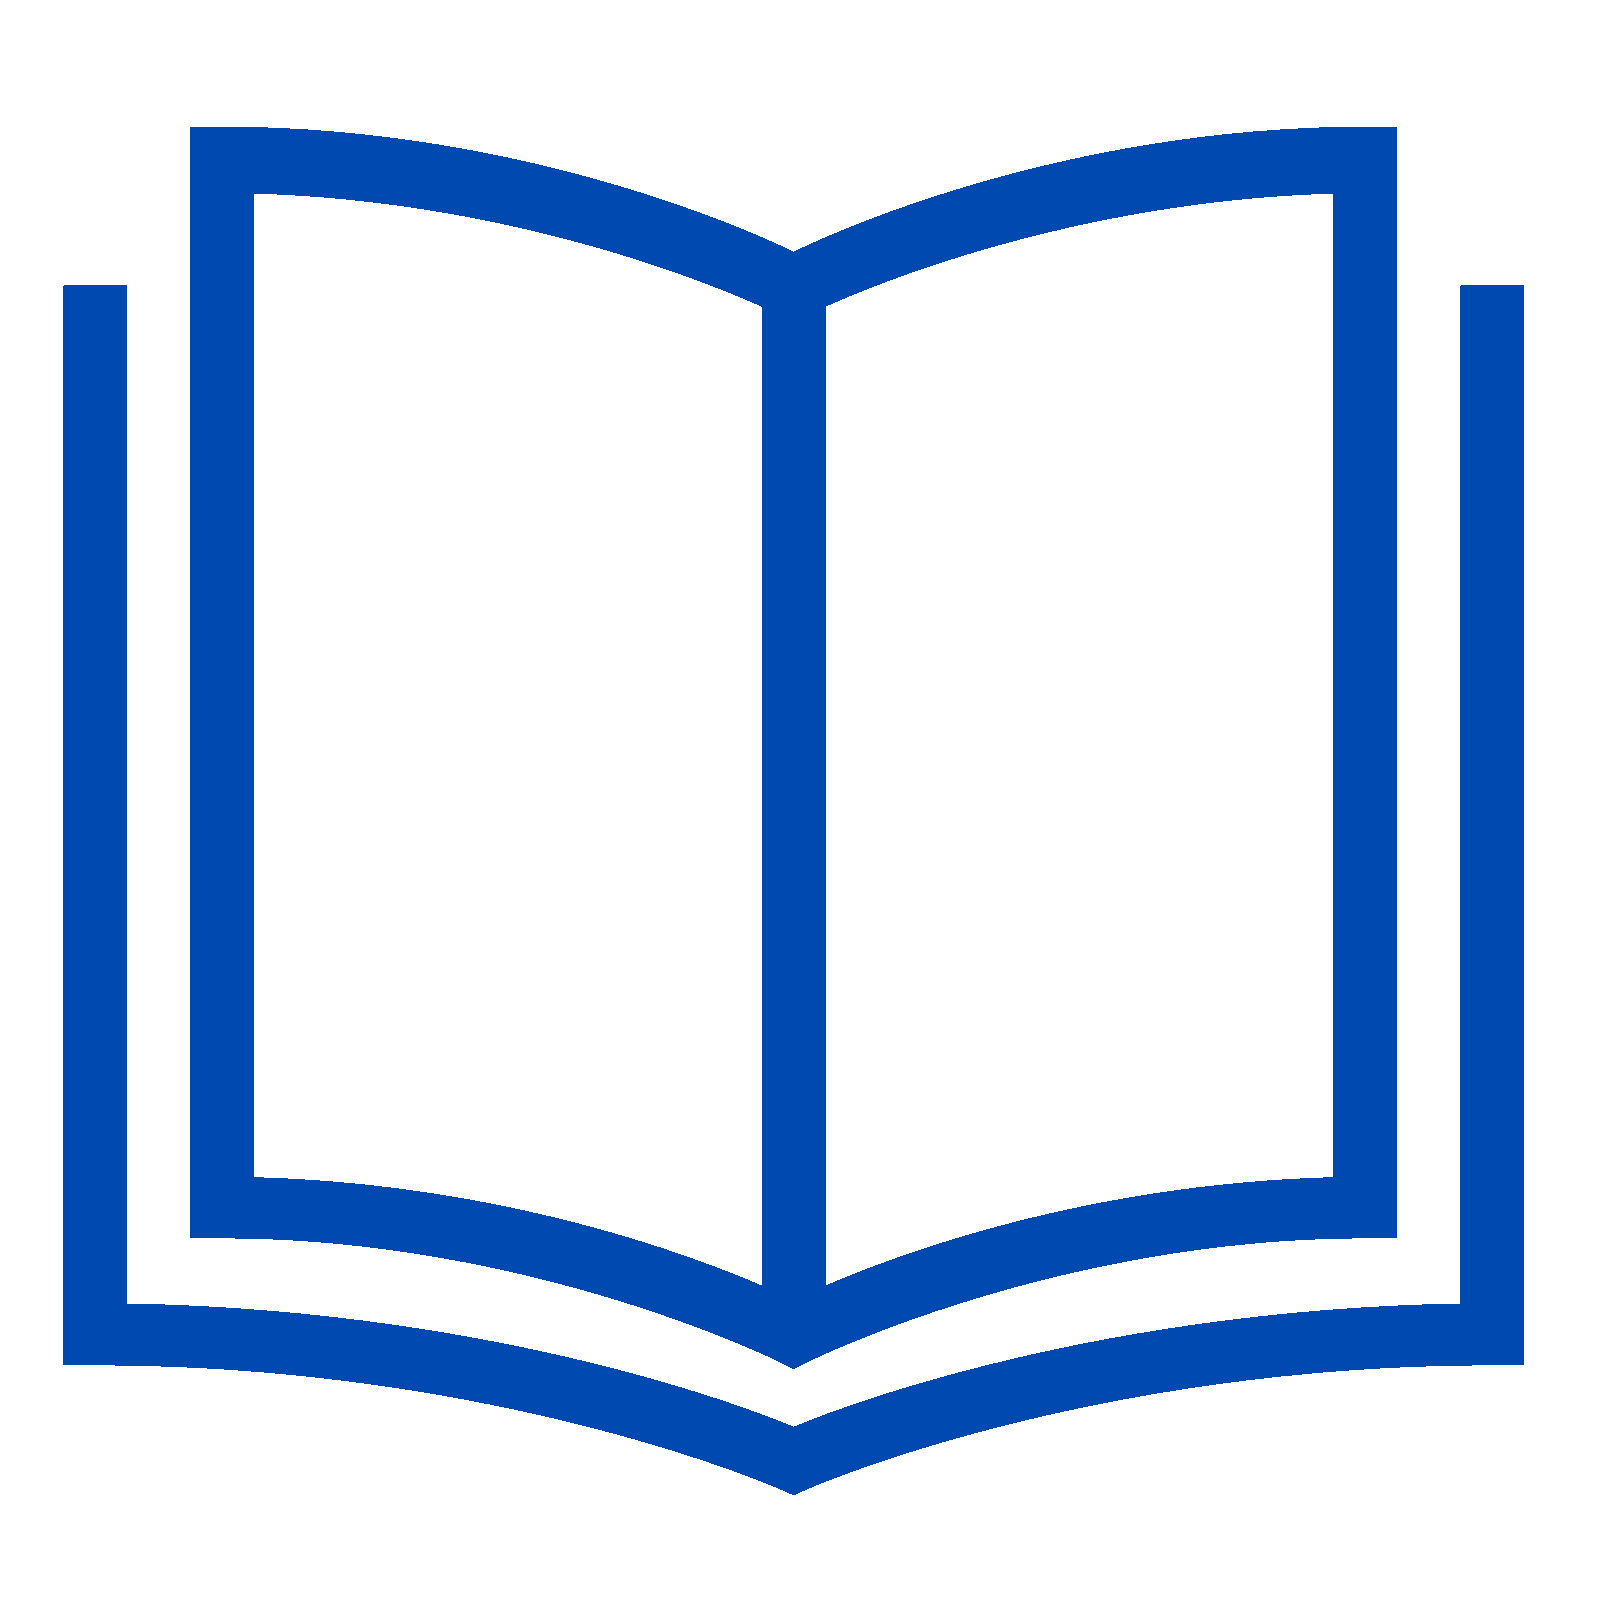 Book icon. Книга символ. Значок книжечки. Открытая книга без фона. Книжные символы.